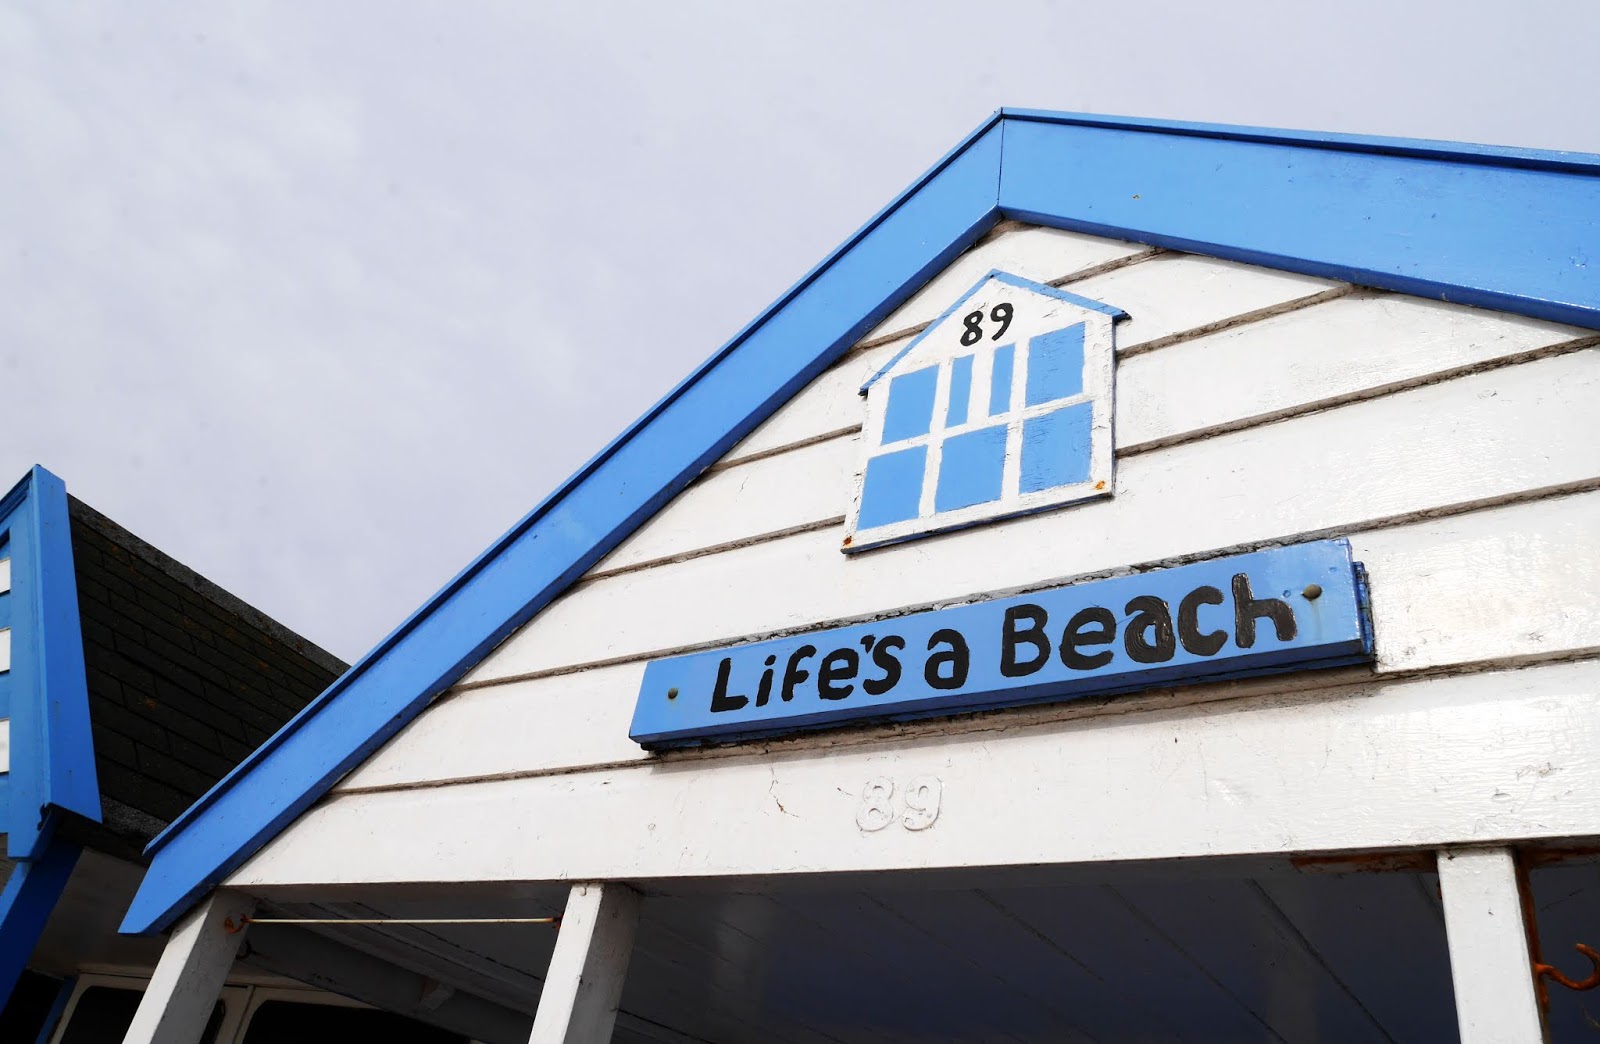 'Life's a Beach' beach hut in Southwold, Suffolk